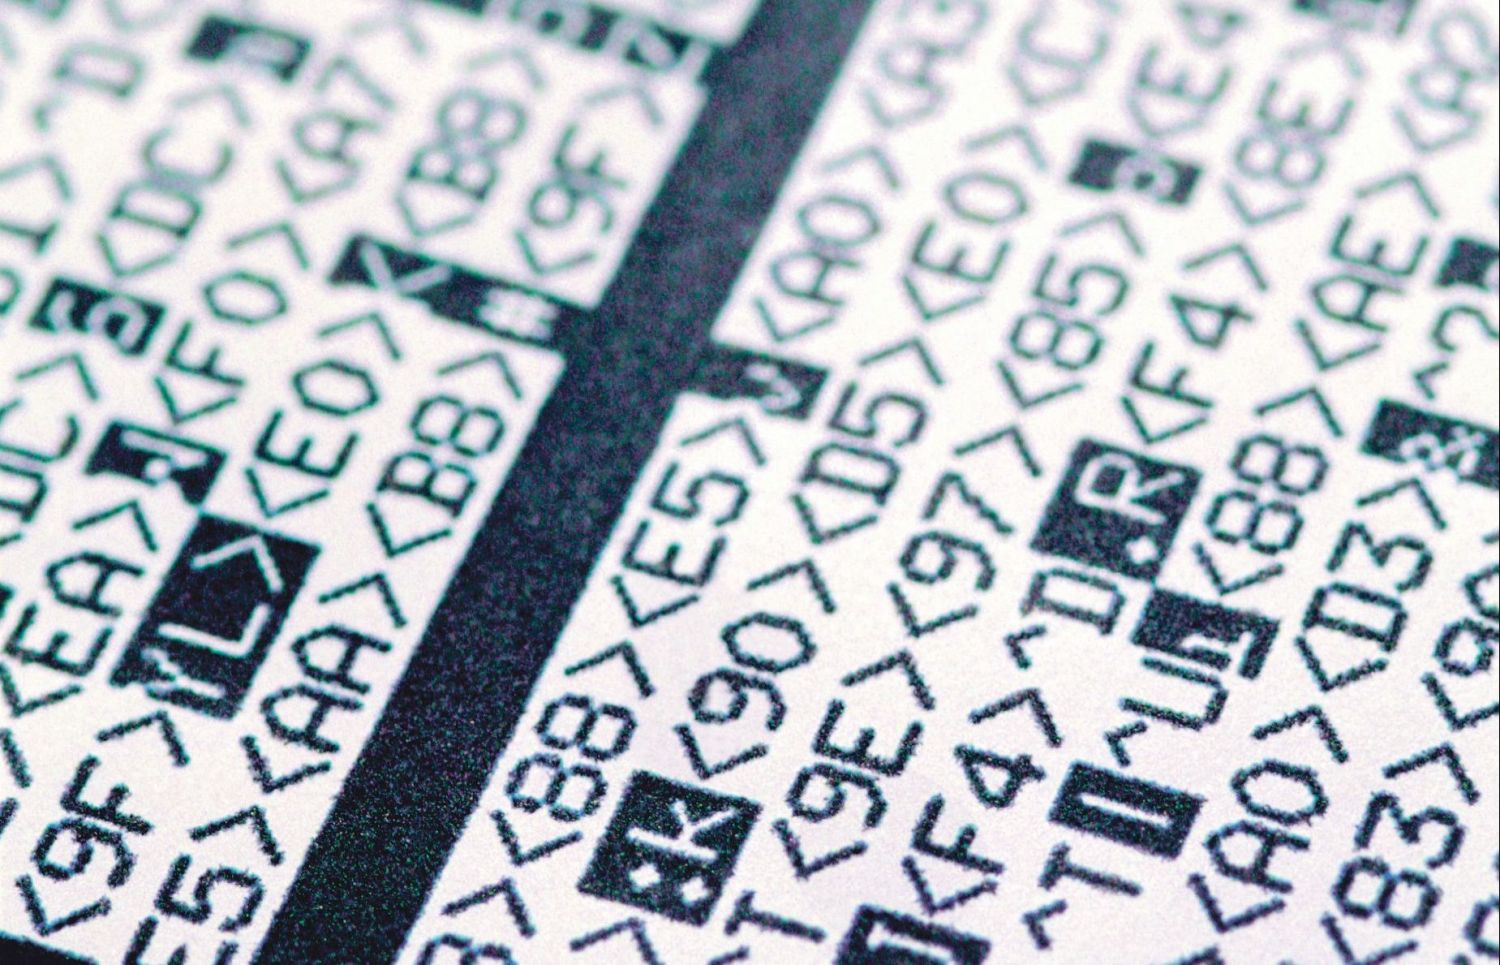  Detail eines mit Schrift- und Sonderzeichen bedruckten Papiers. Verschlüsselung ist in der Produktion ein wichtiges Thema